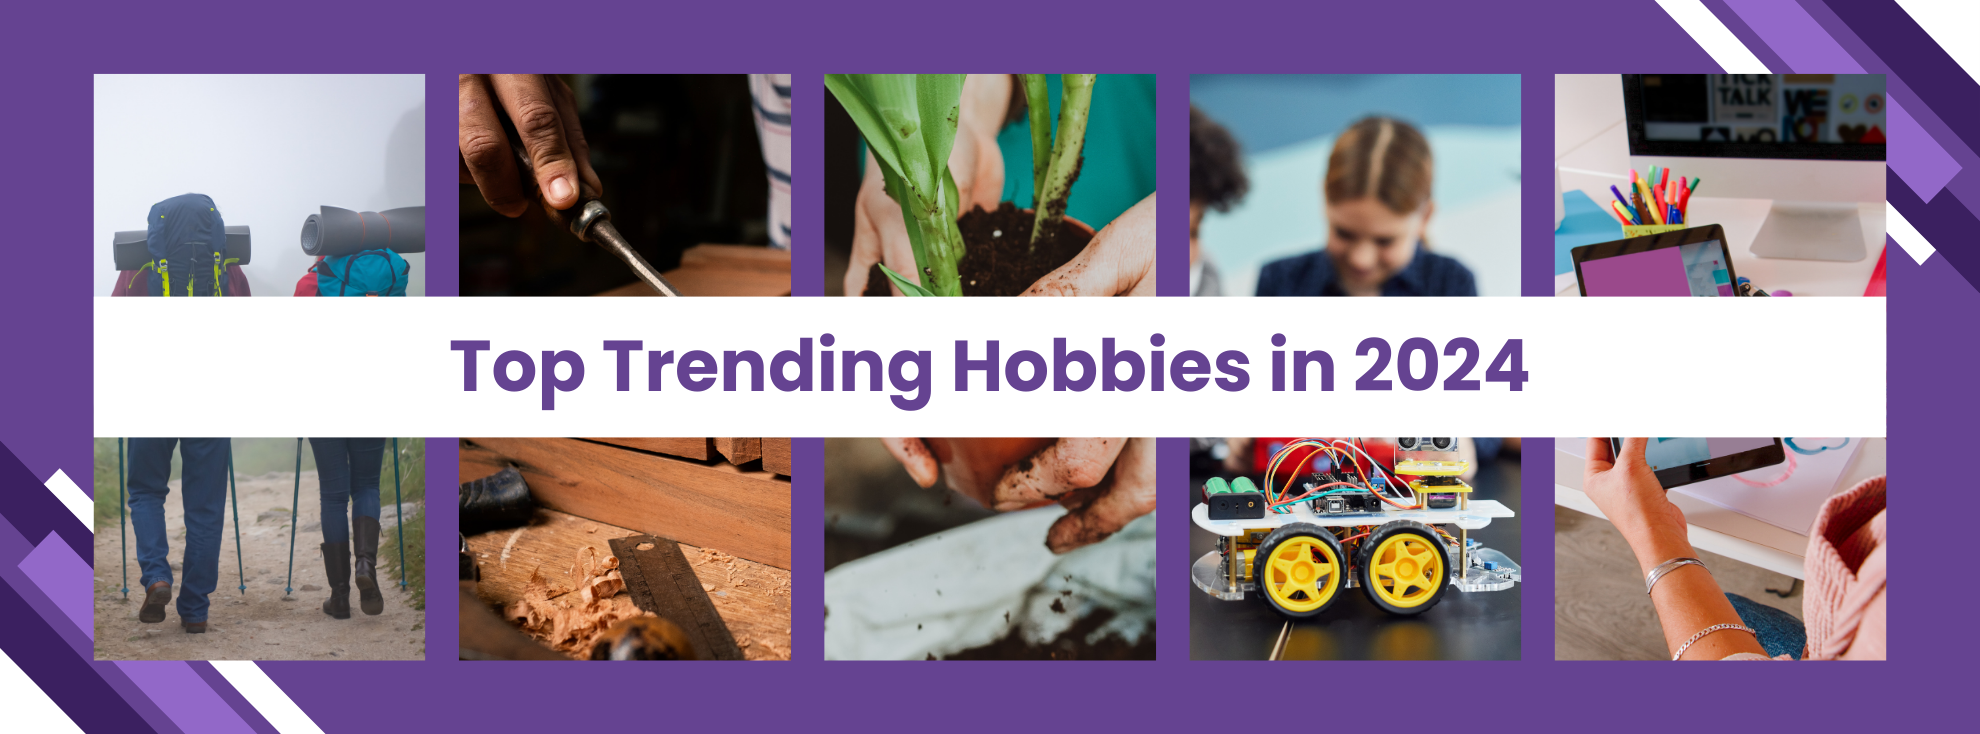 Top Trending Hobbies in 2024 - Featured Image